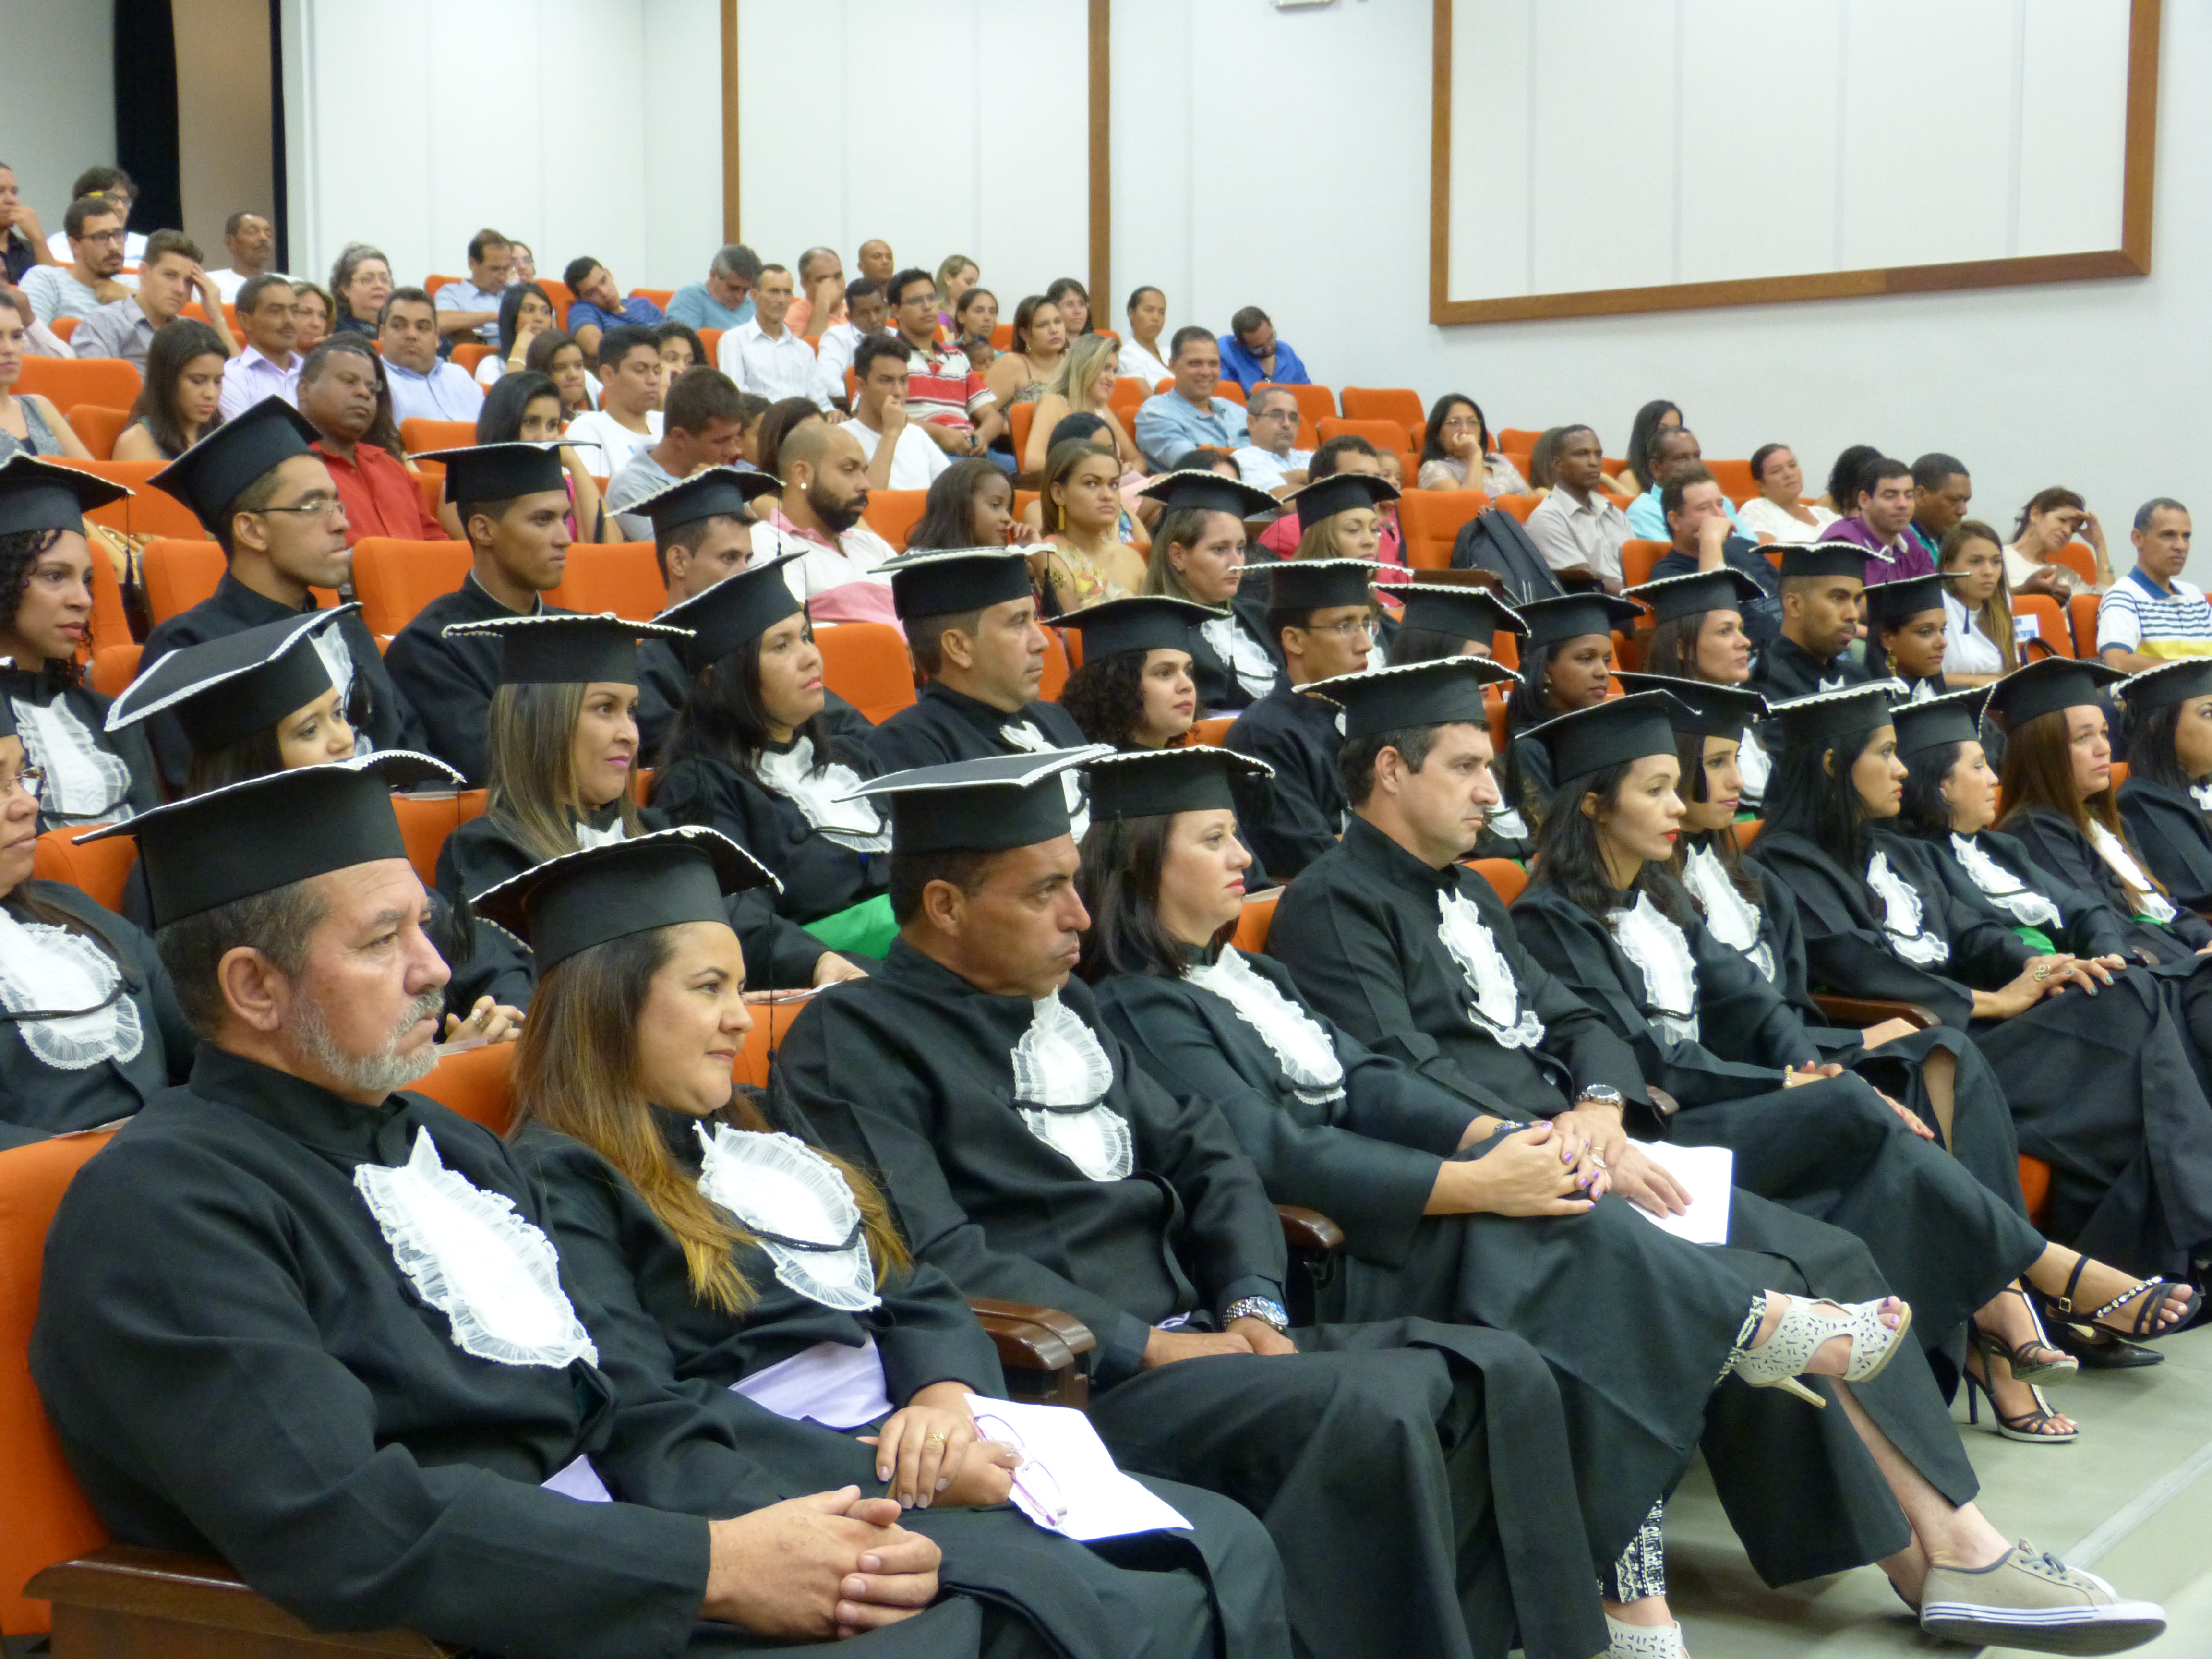 Graduação em Direito – Página Oficial do Colegiado do Curso de Graduação em  Direito da UFMG